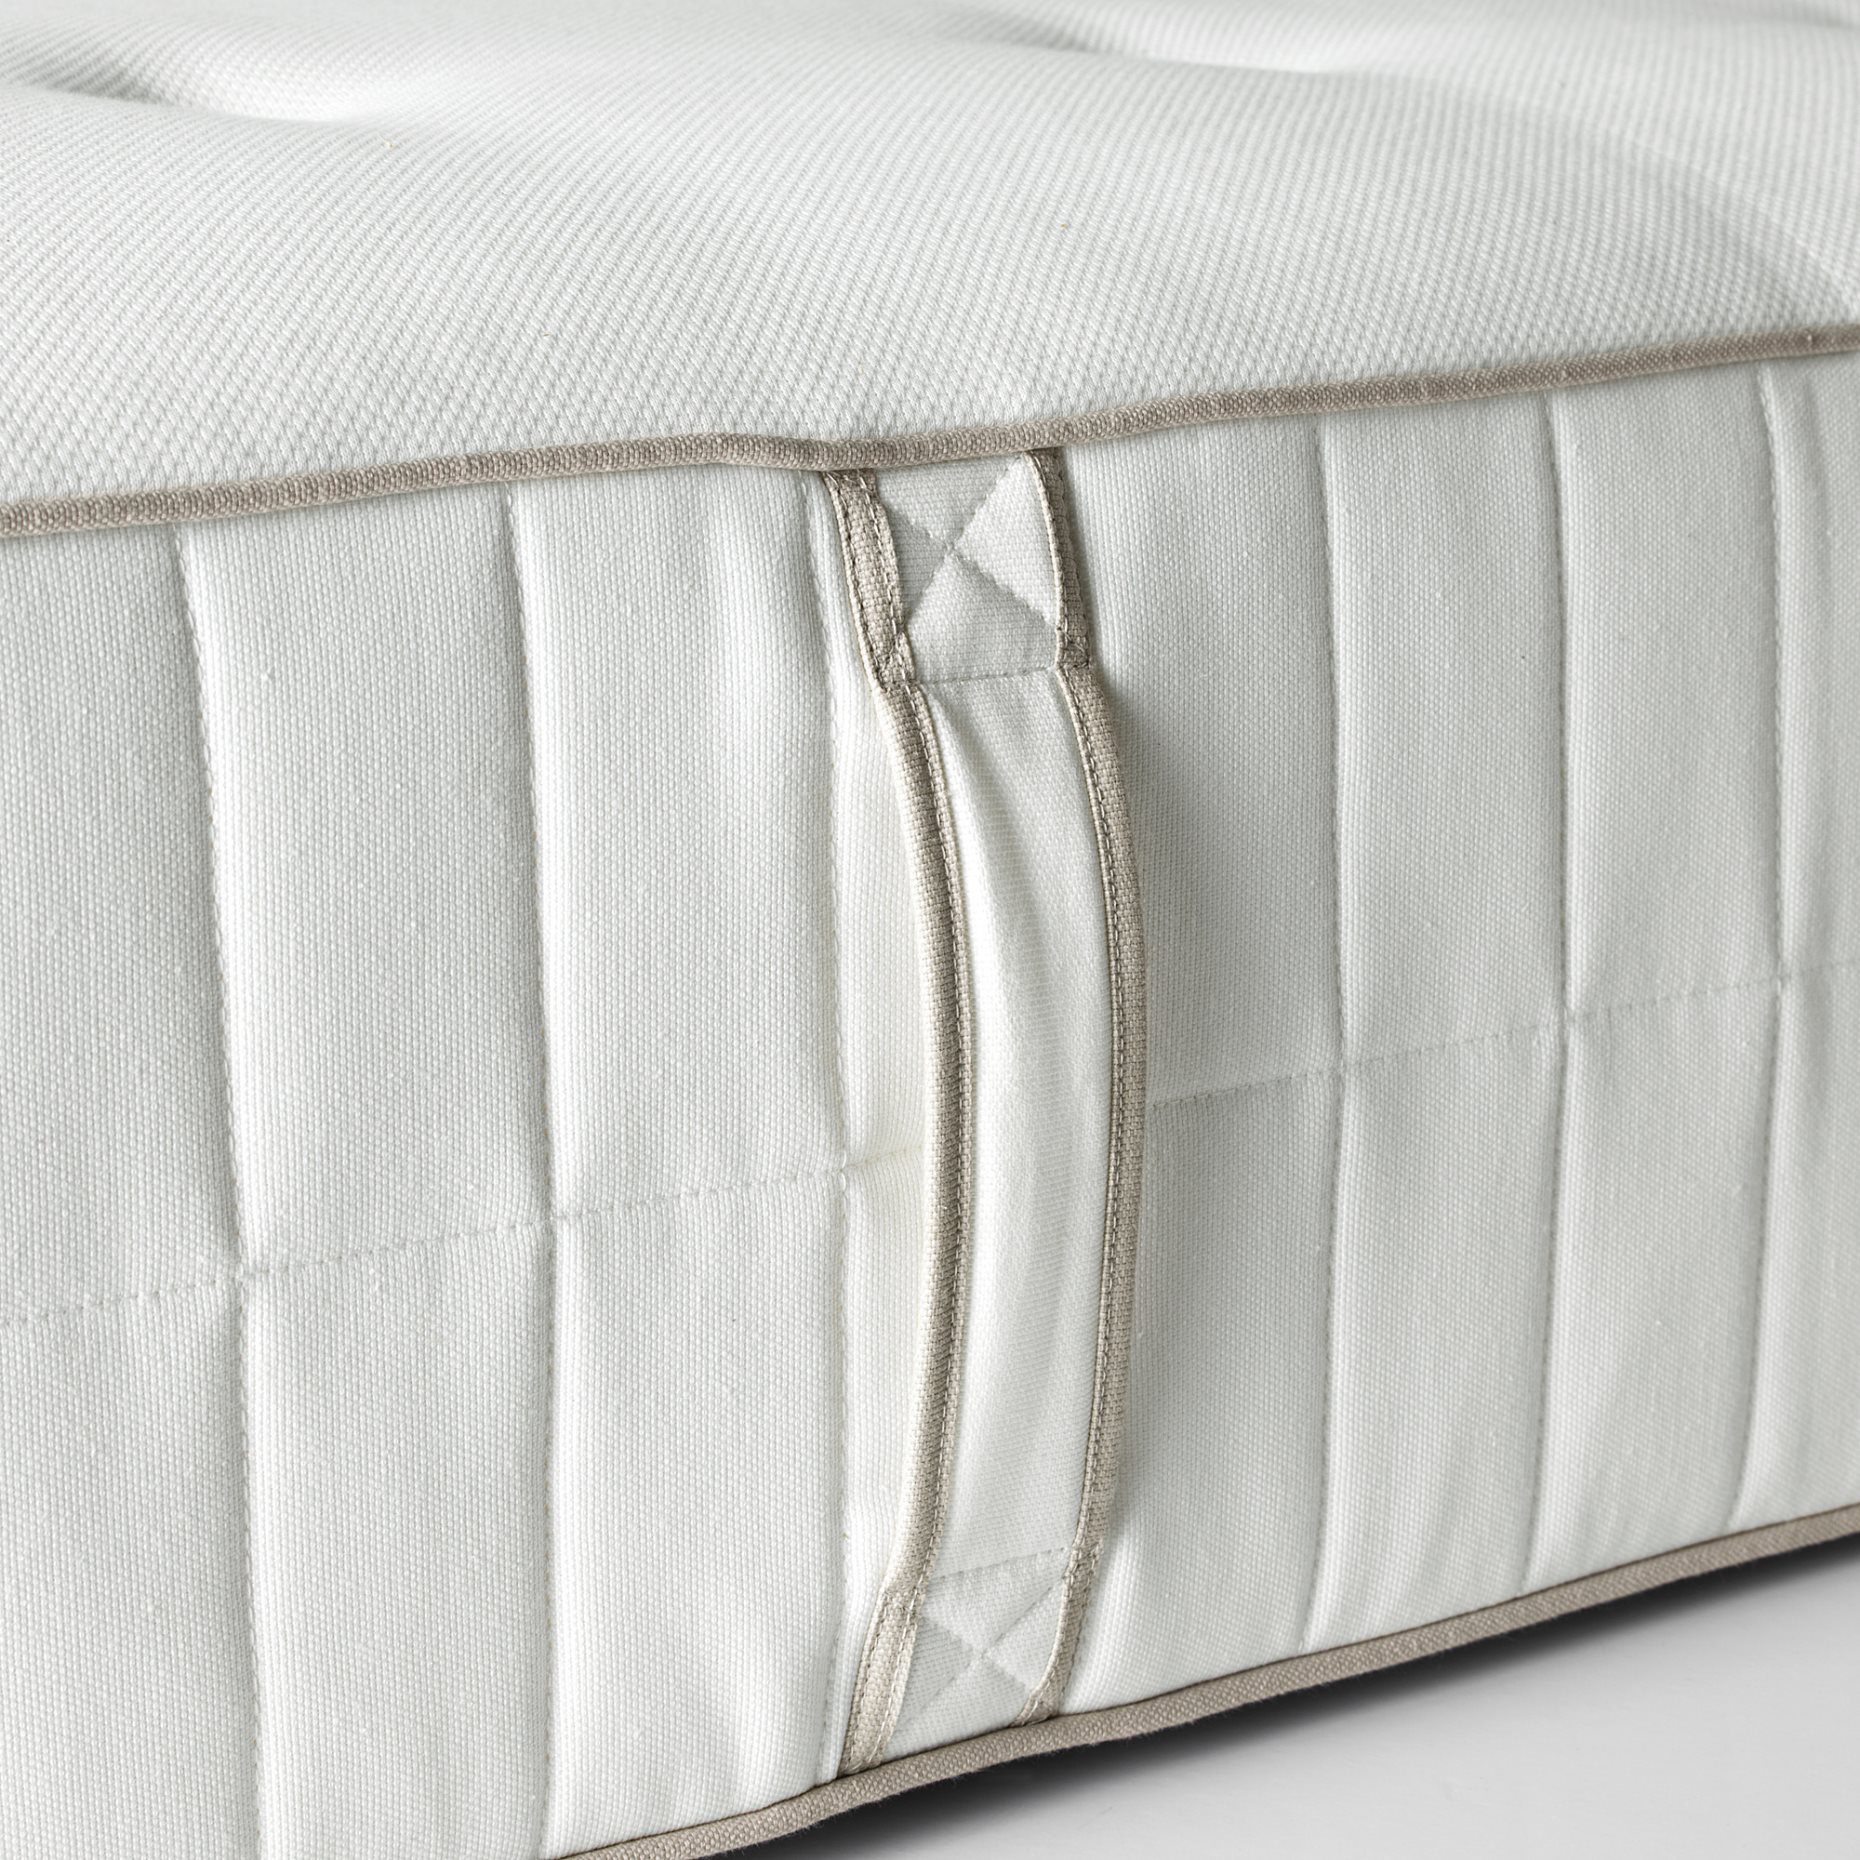 HOKKASEN, pocket sprung mattress extra firm, 160x200 cm, 904.849.65